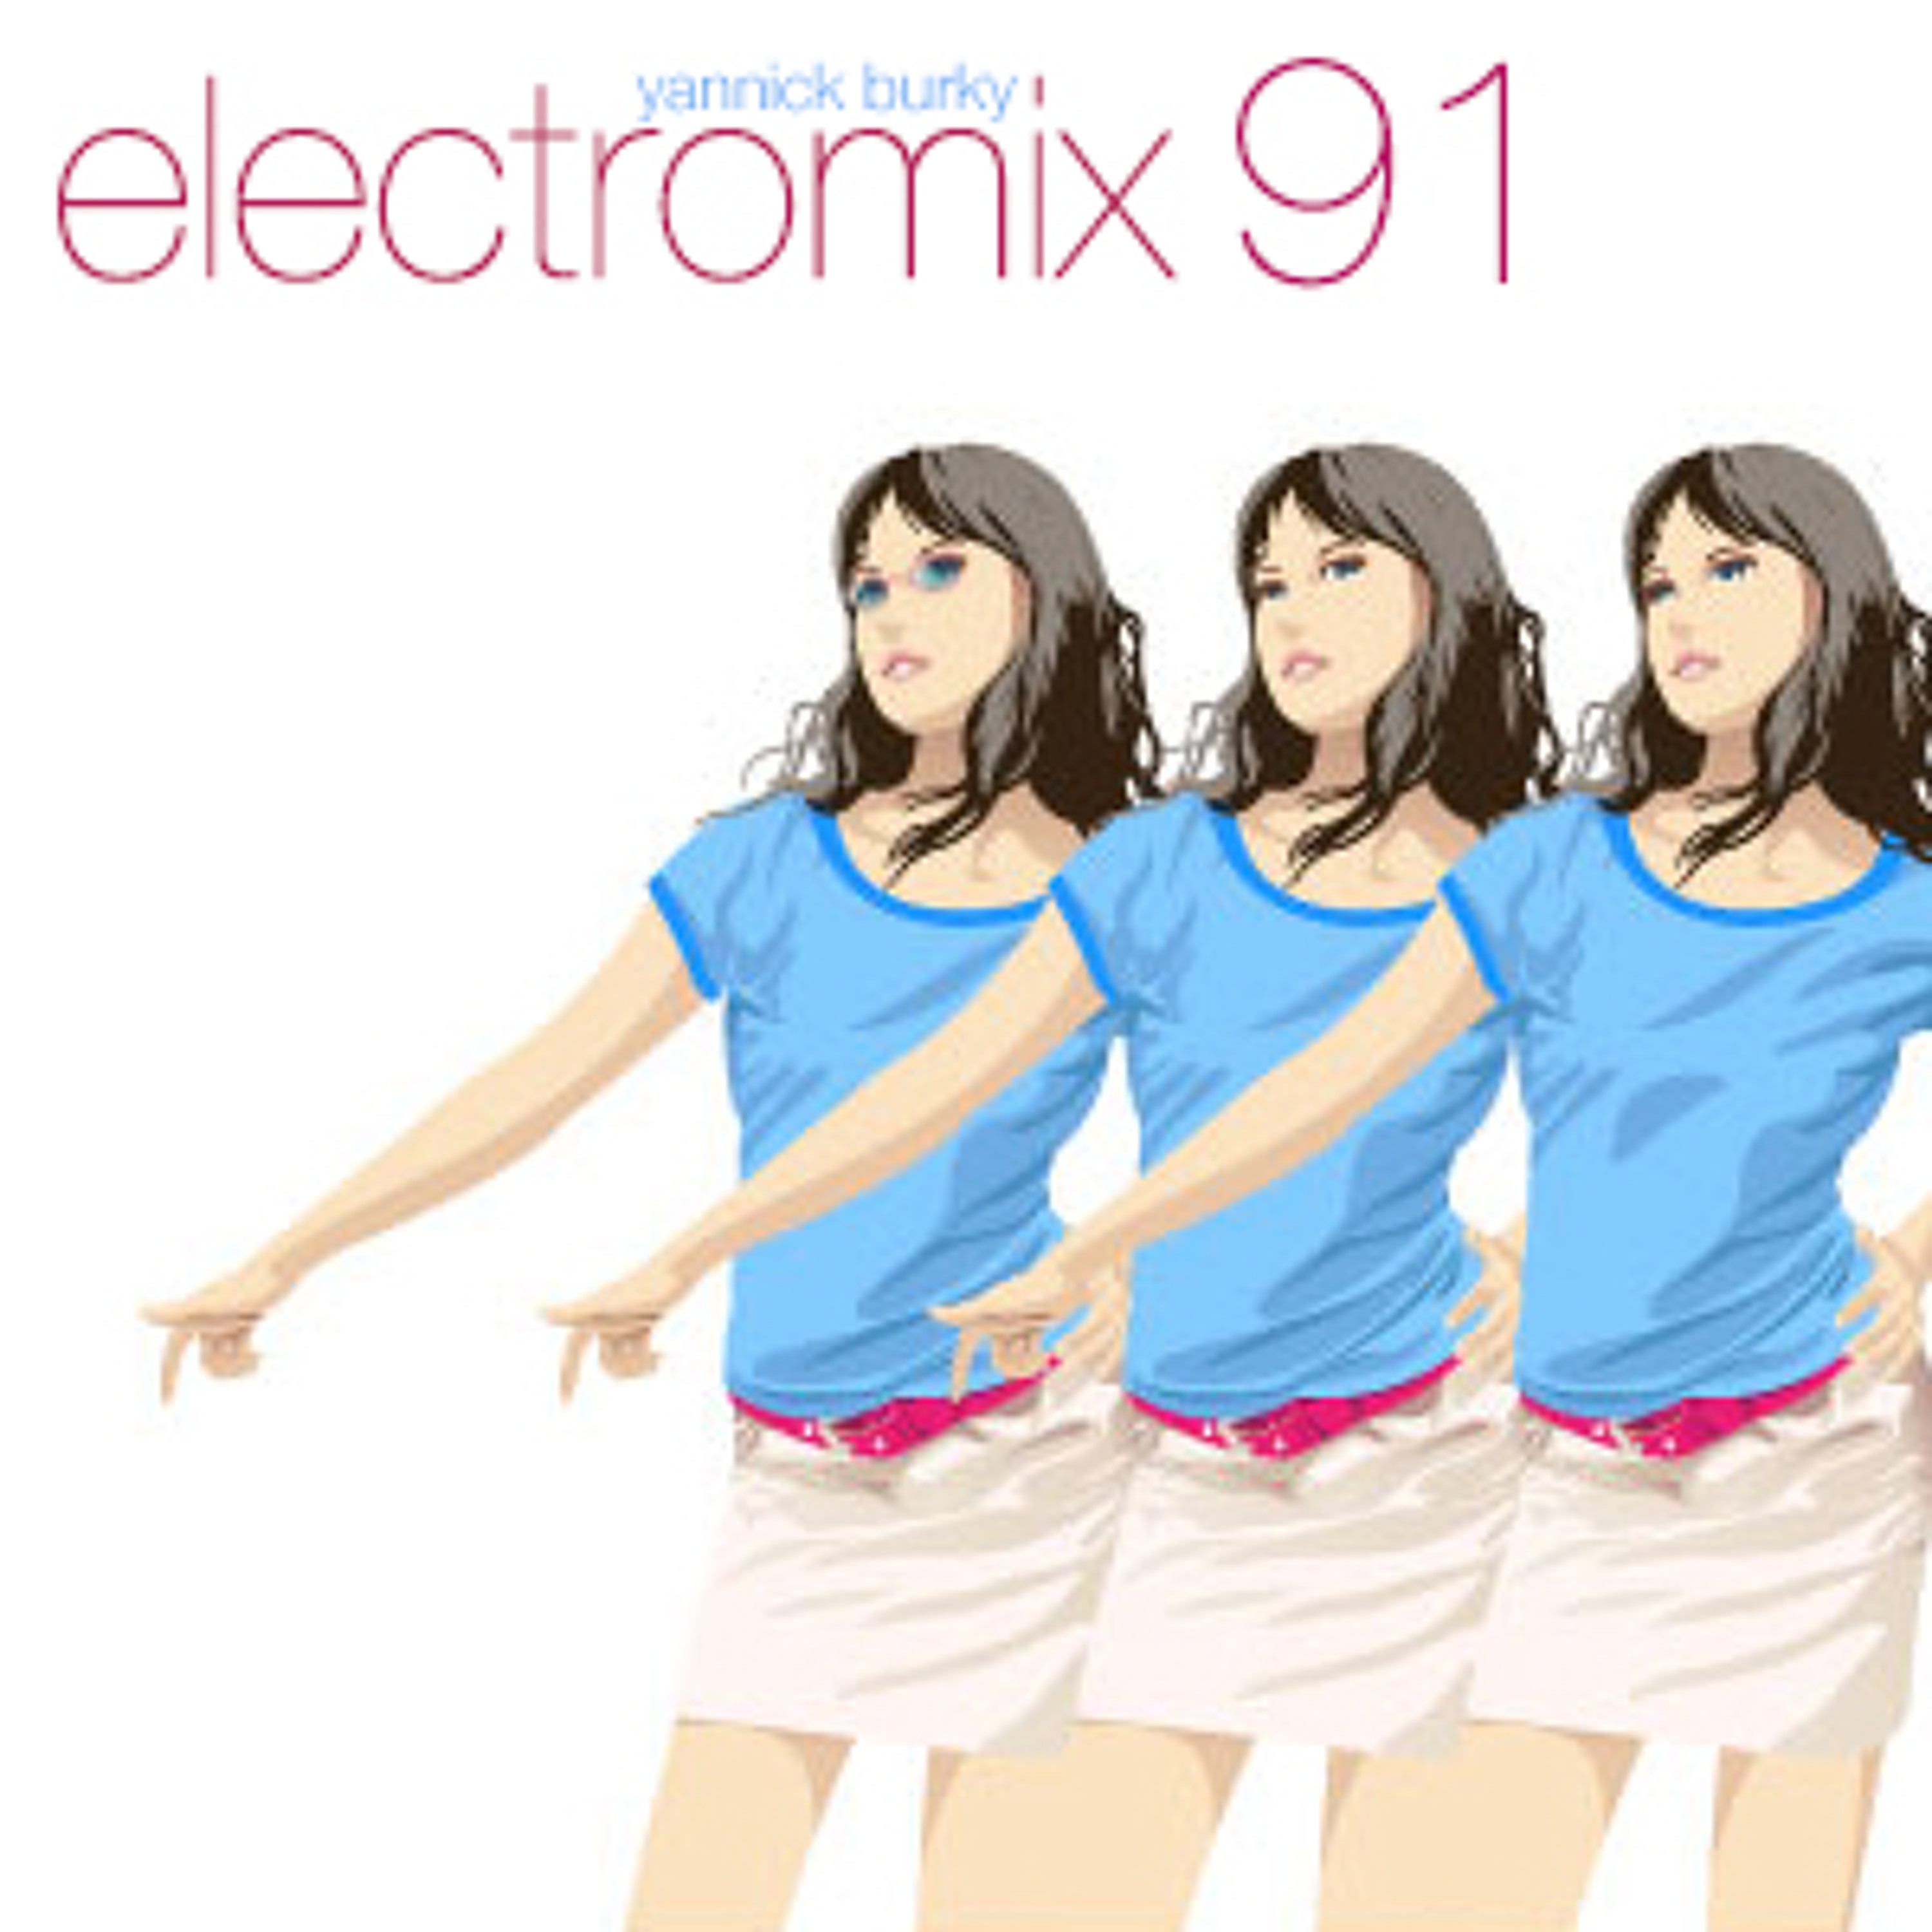 electromix 91 • EDM